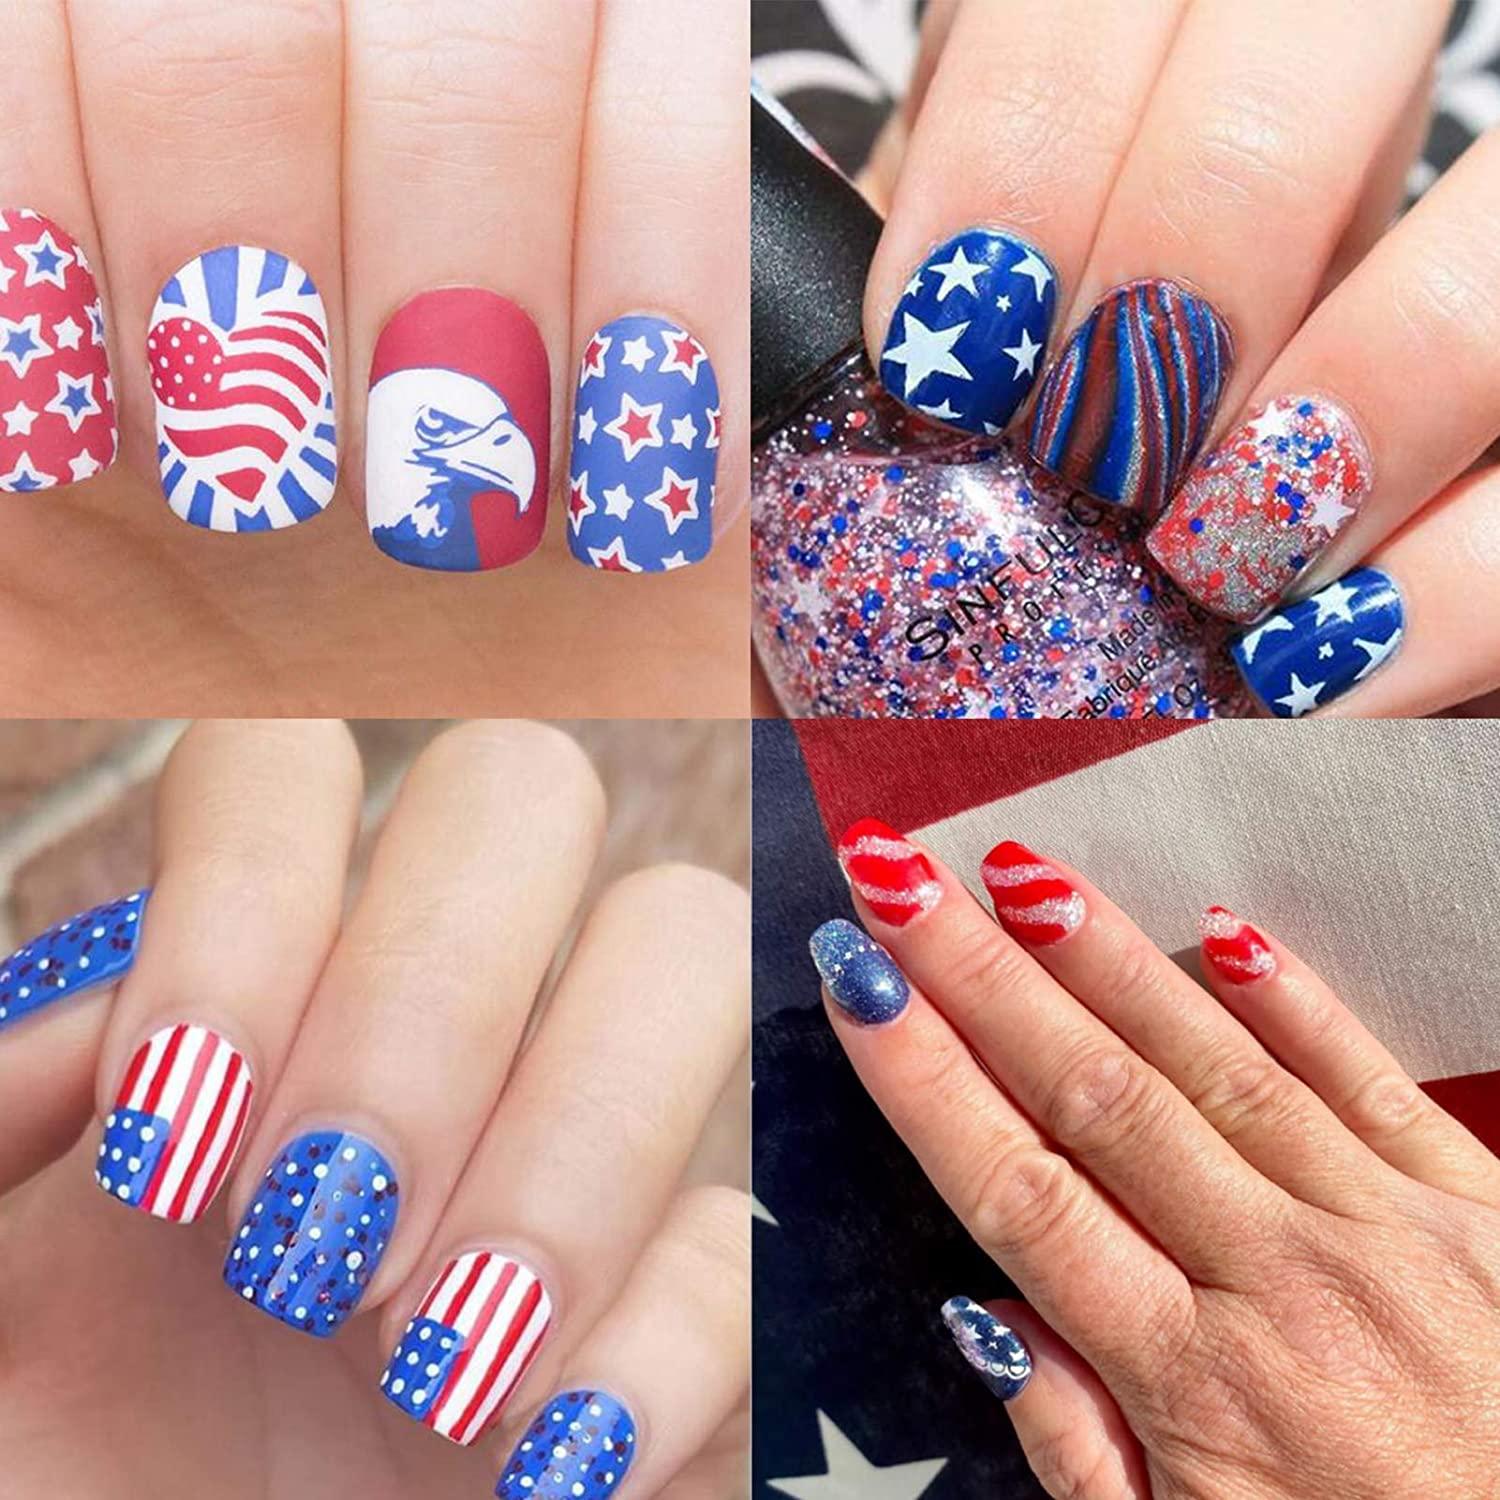 American flag toe nails | Toe polish, July nails, Toe nails